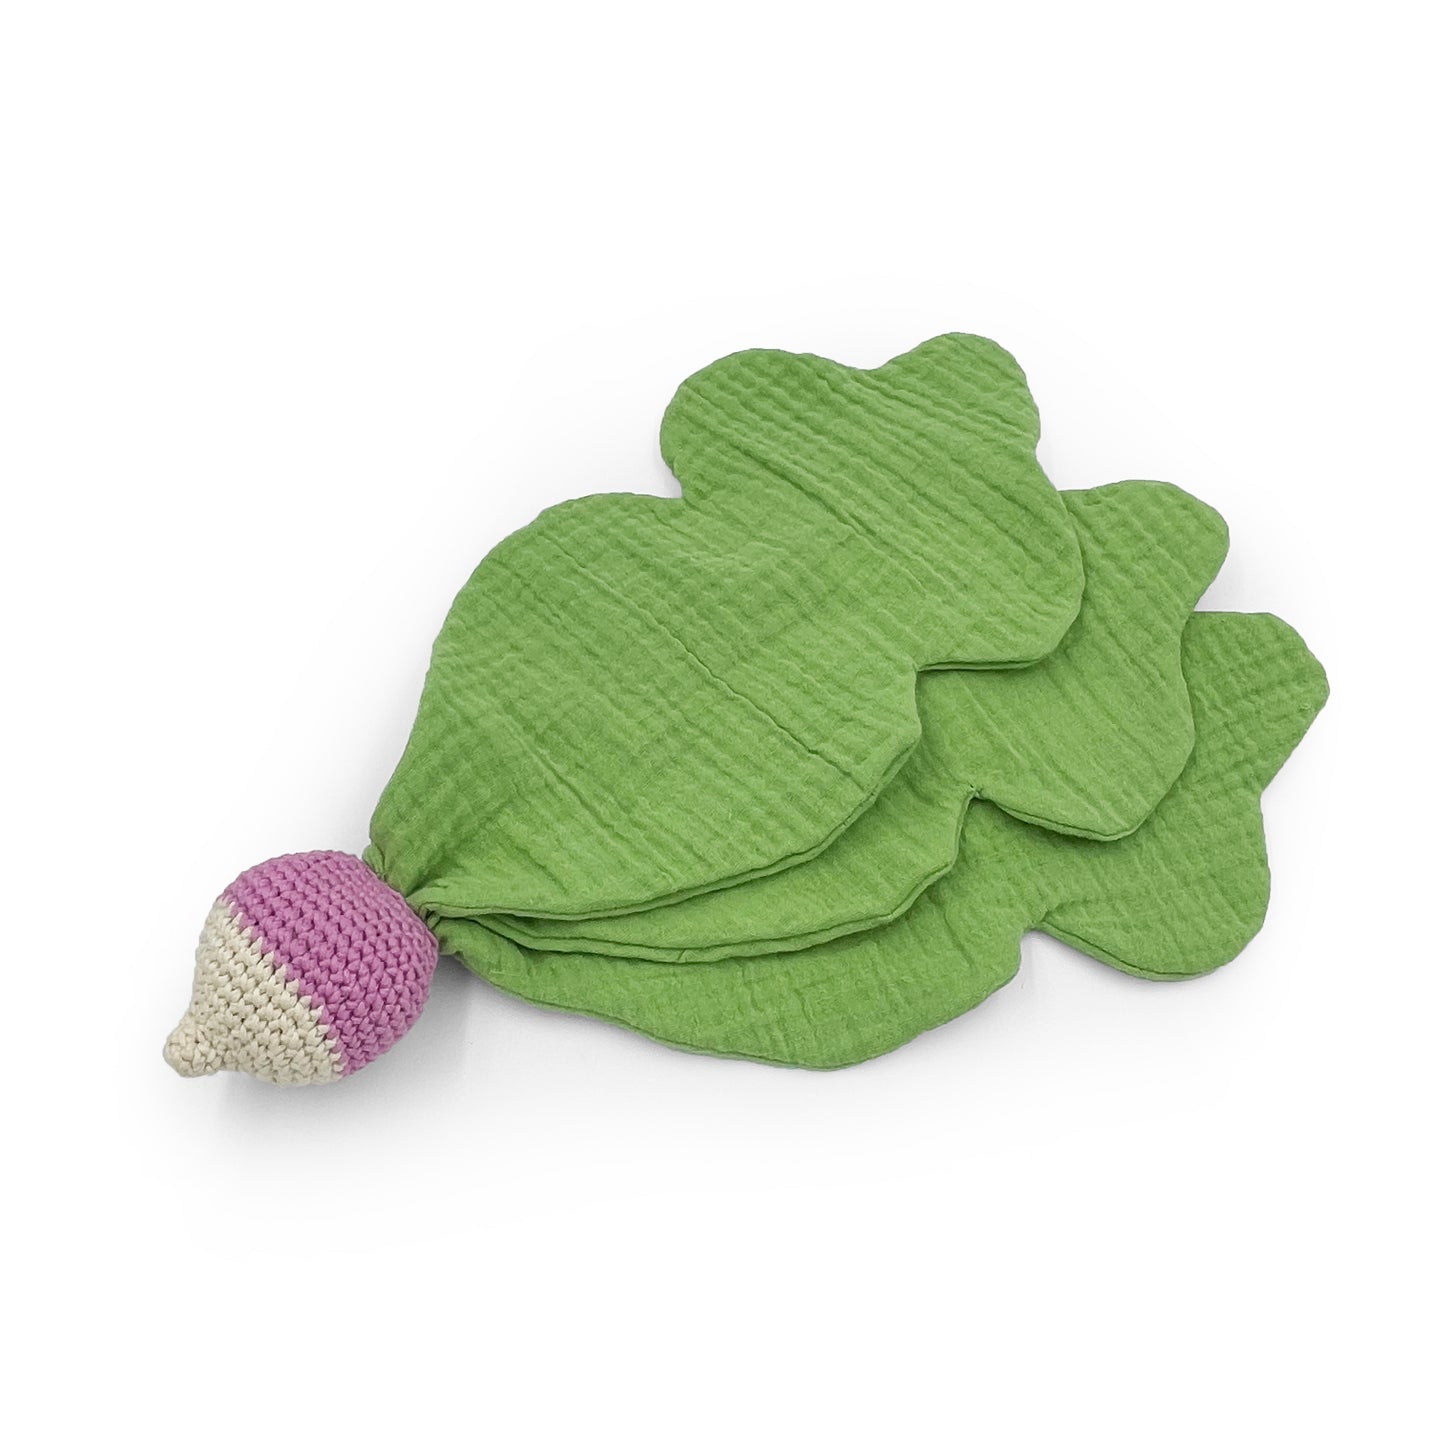 Doudou pour bébé radis blanc et mauve, feuilles vertes, en coton biologique certifié GOTS et crochet fait à la main.